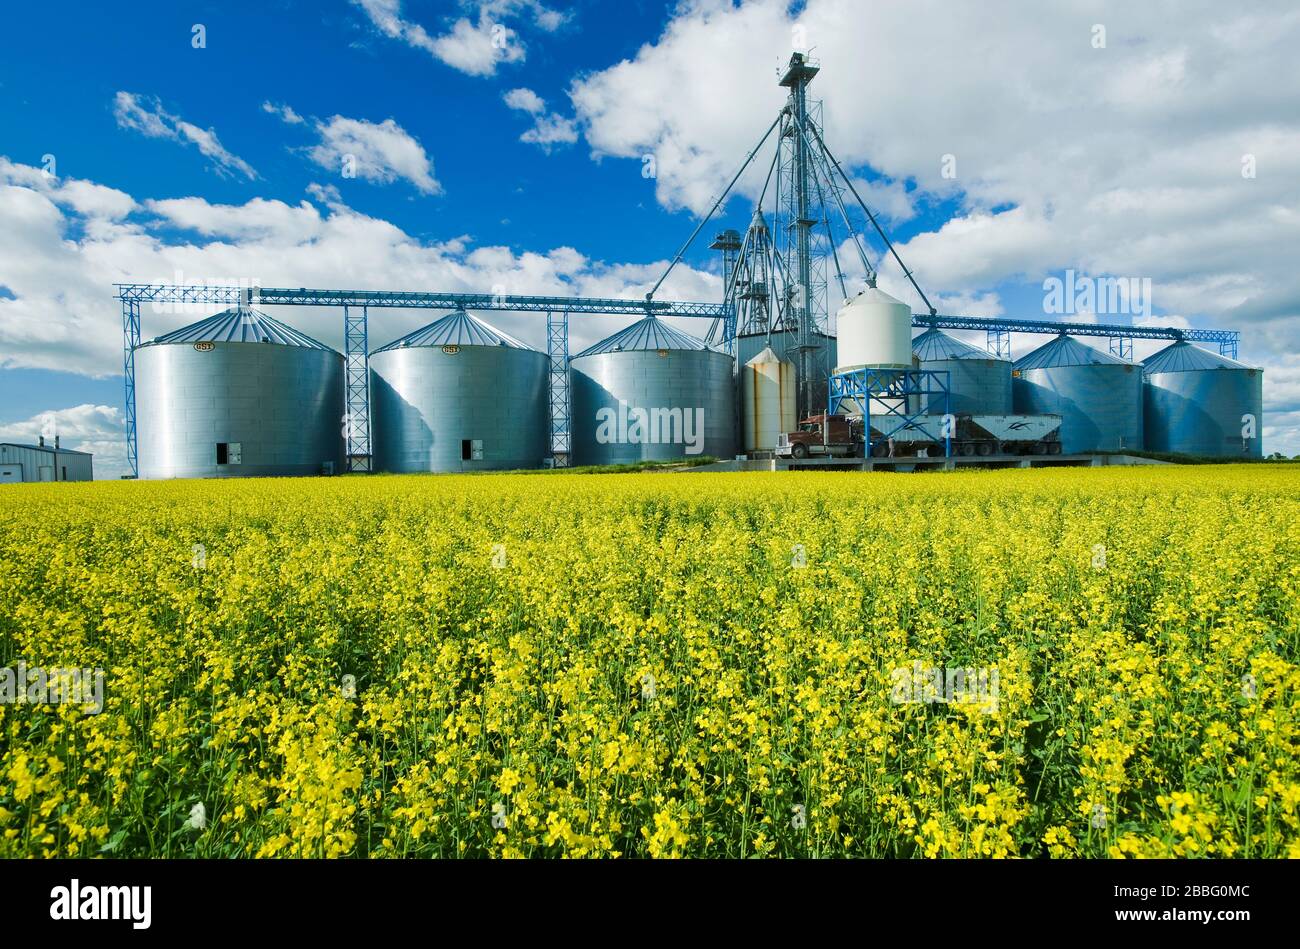 Un campo de canola en etapa de floración con estructura de manejo de grano, incluyendo silos de almacenamiento, en el fondo, cerca de Somerset, Manitoba, Canadá Foto de stock